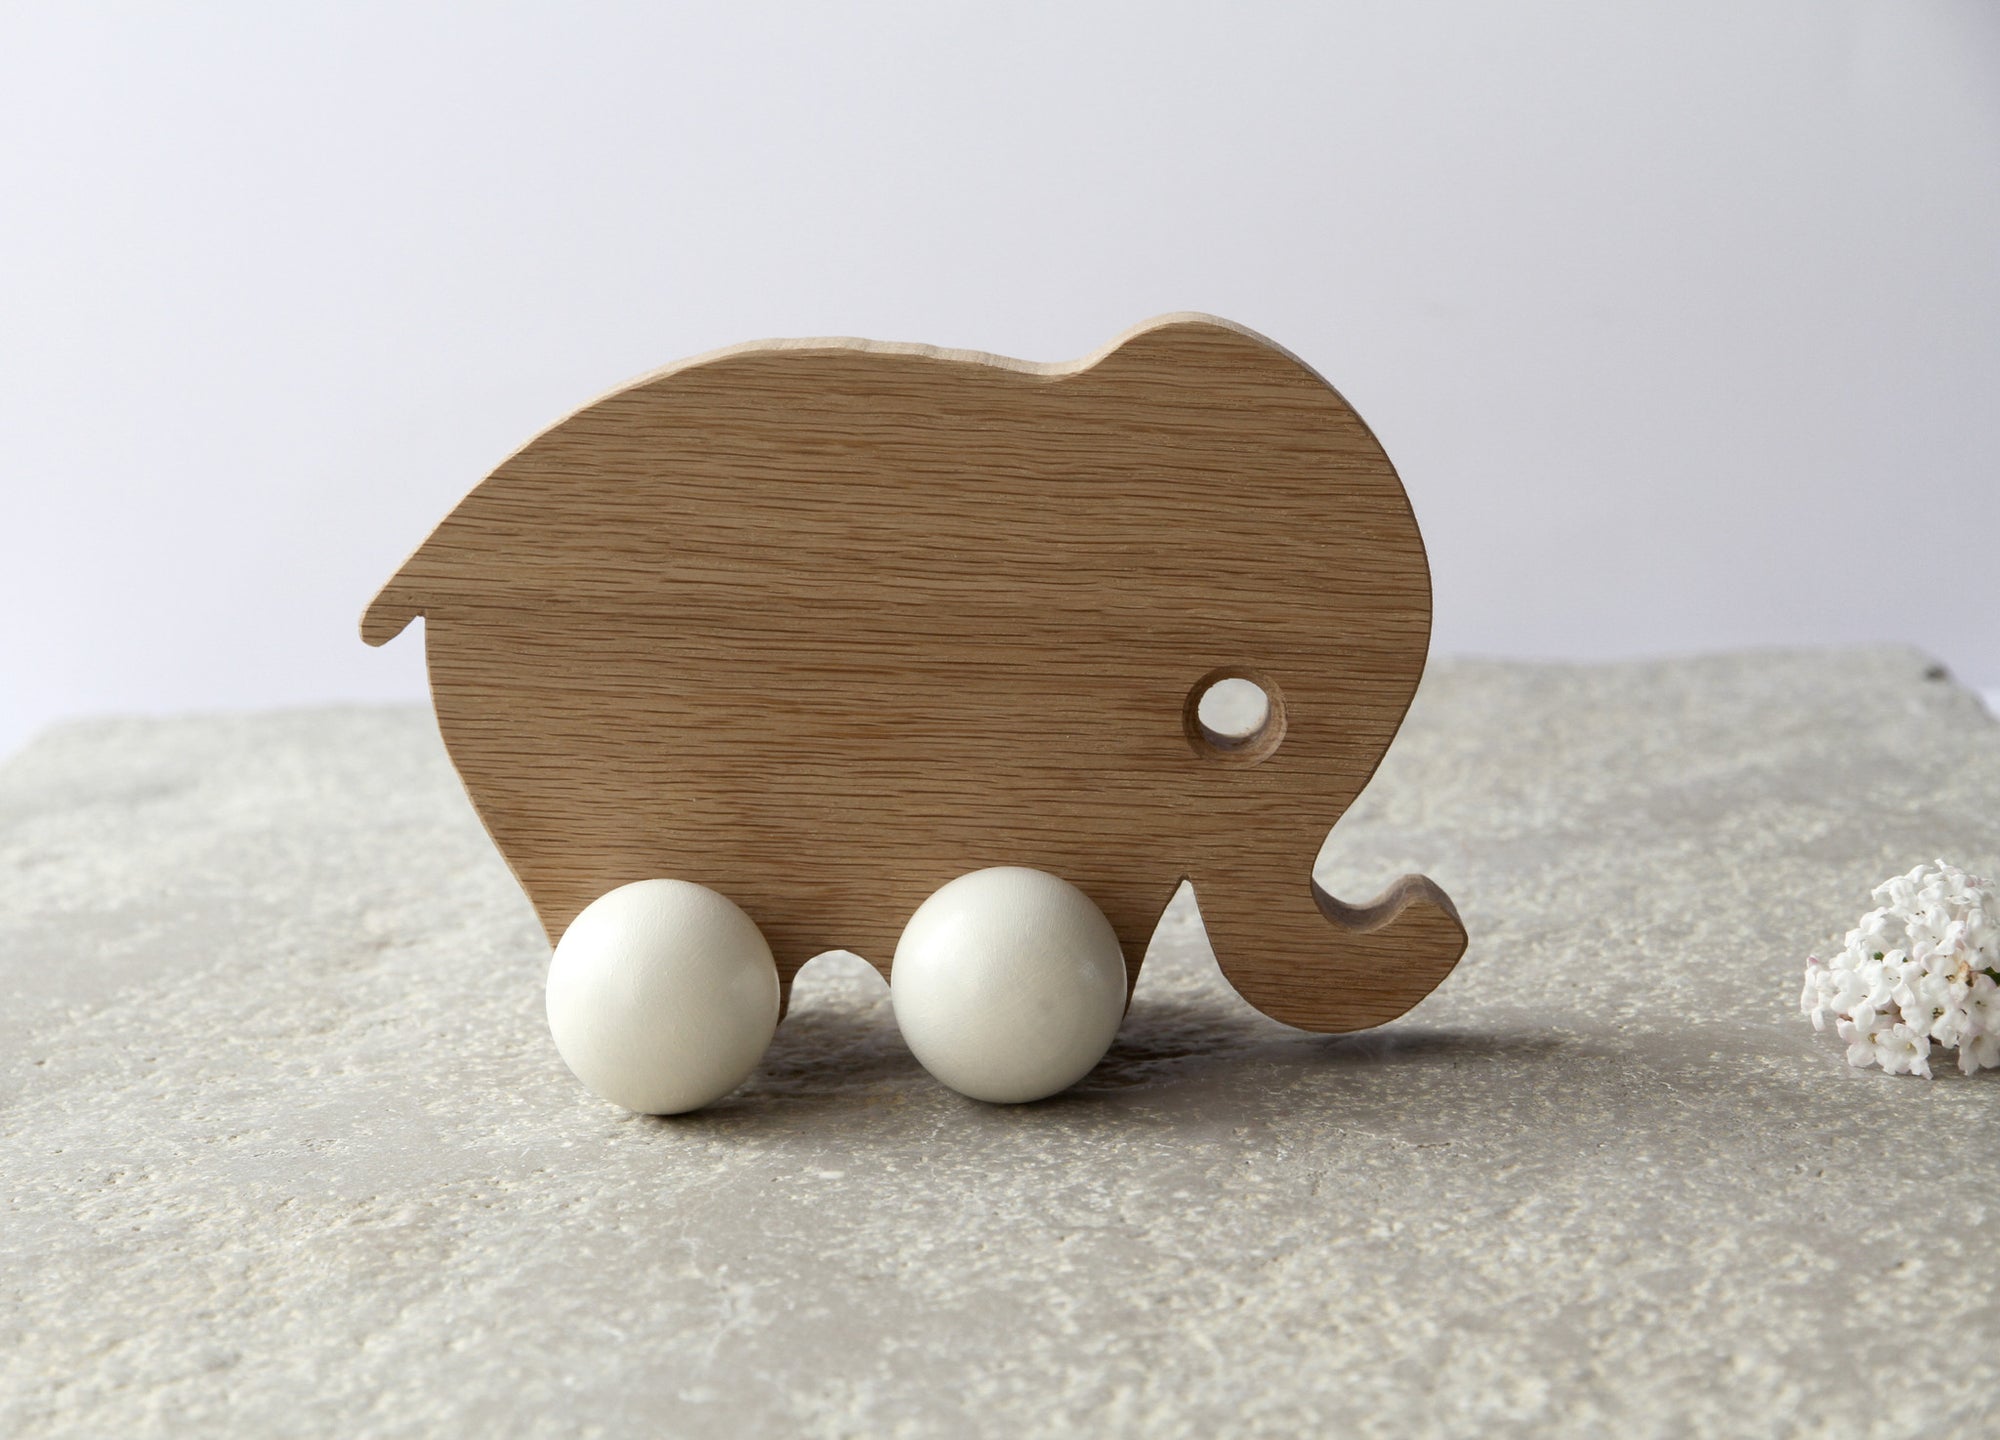 Mama Elephant Wooden Push Toy